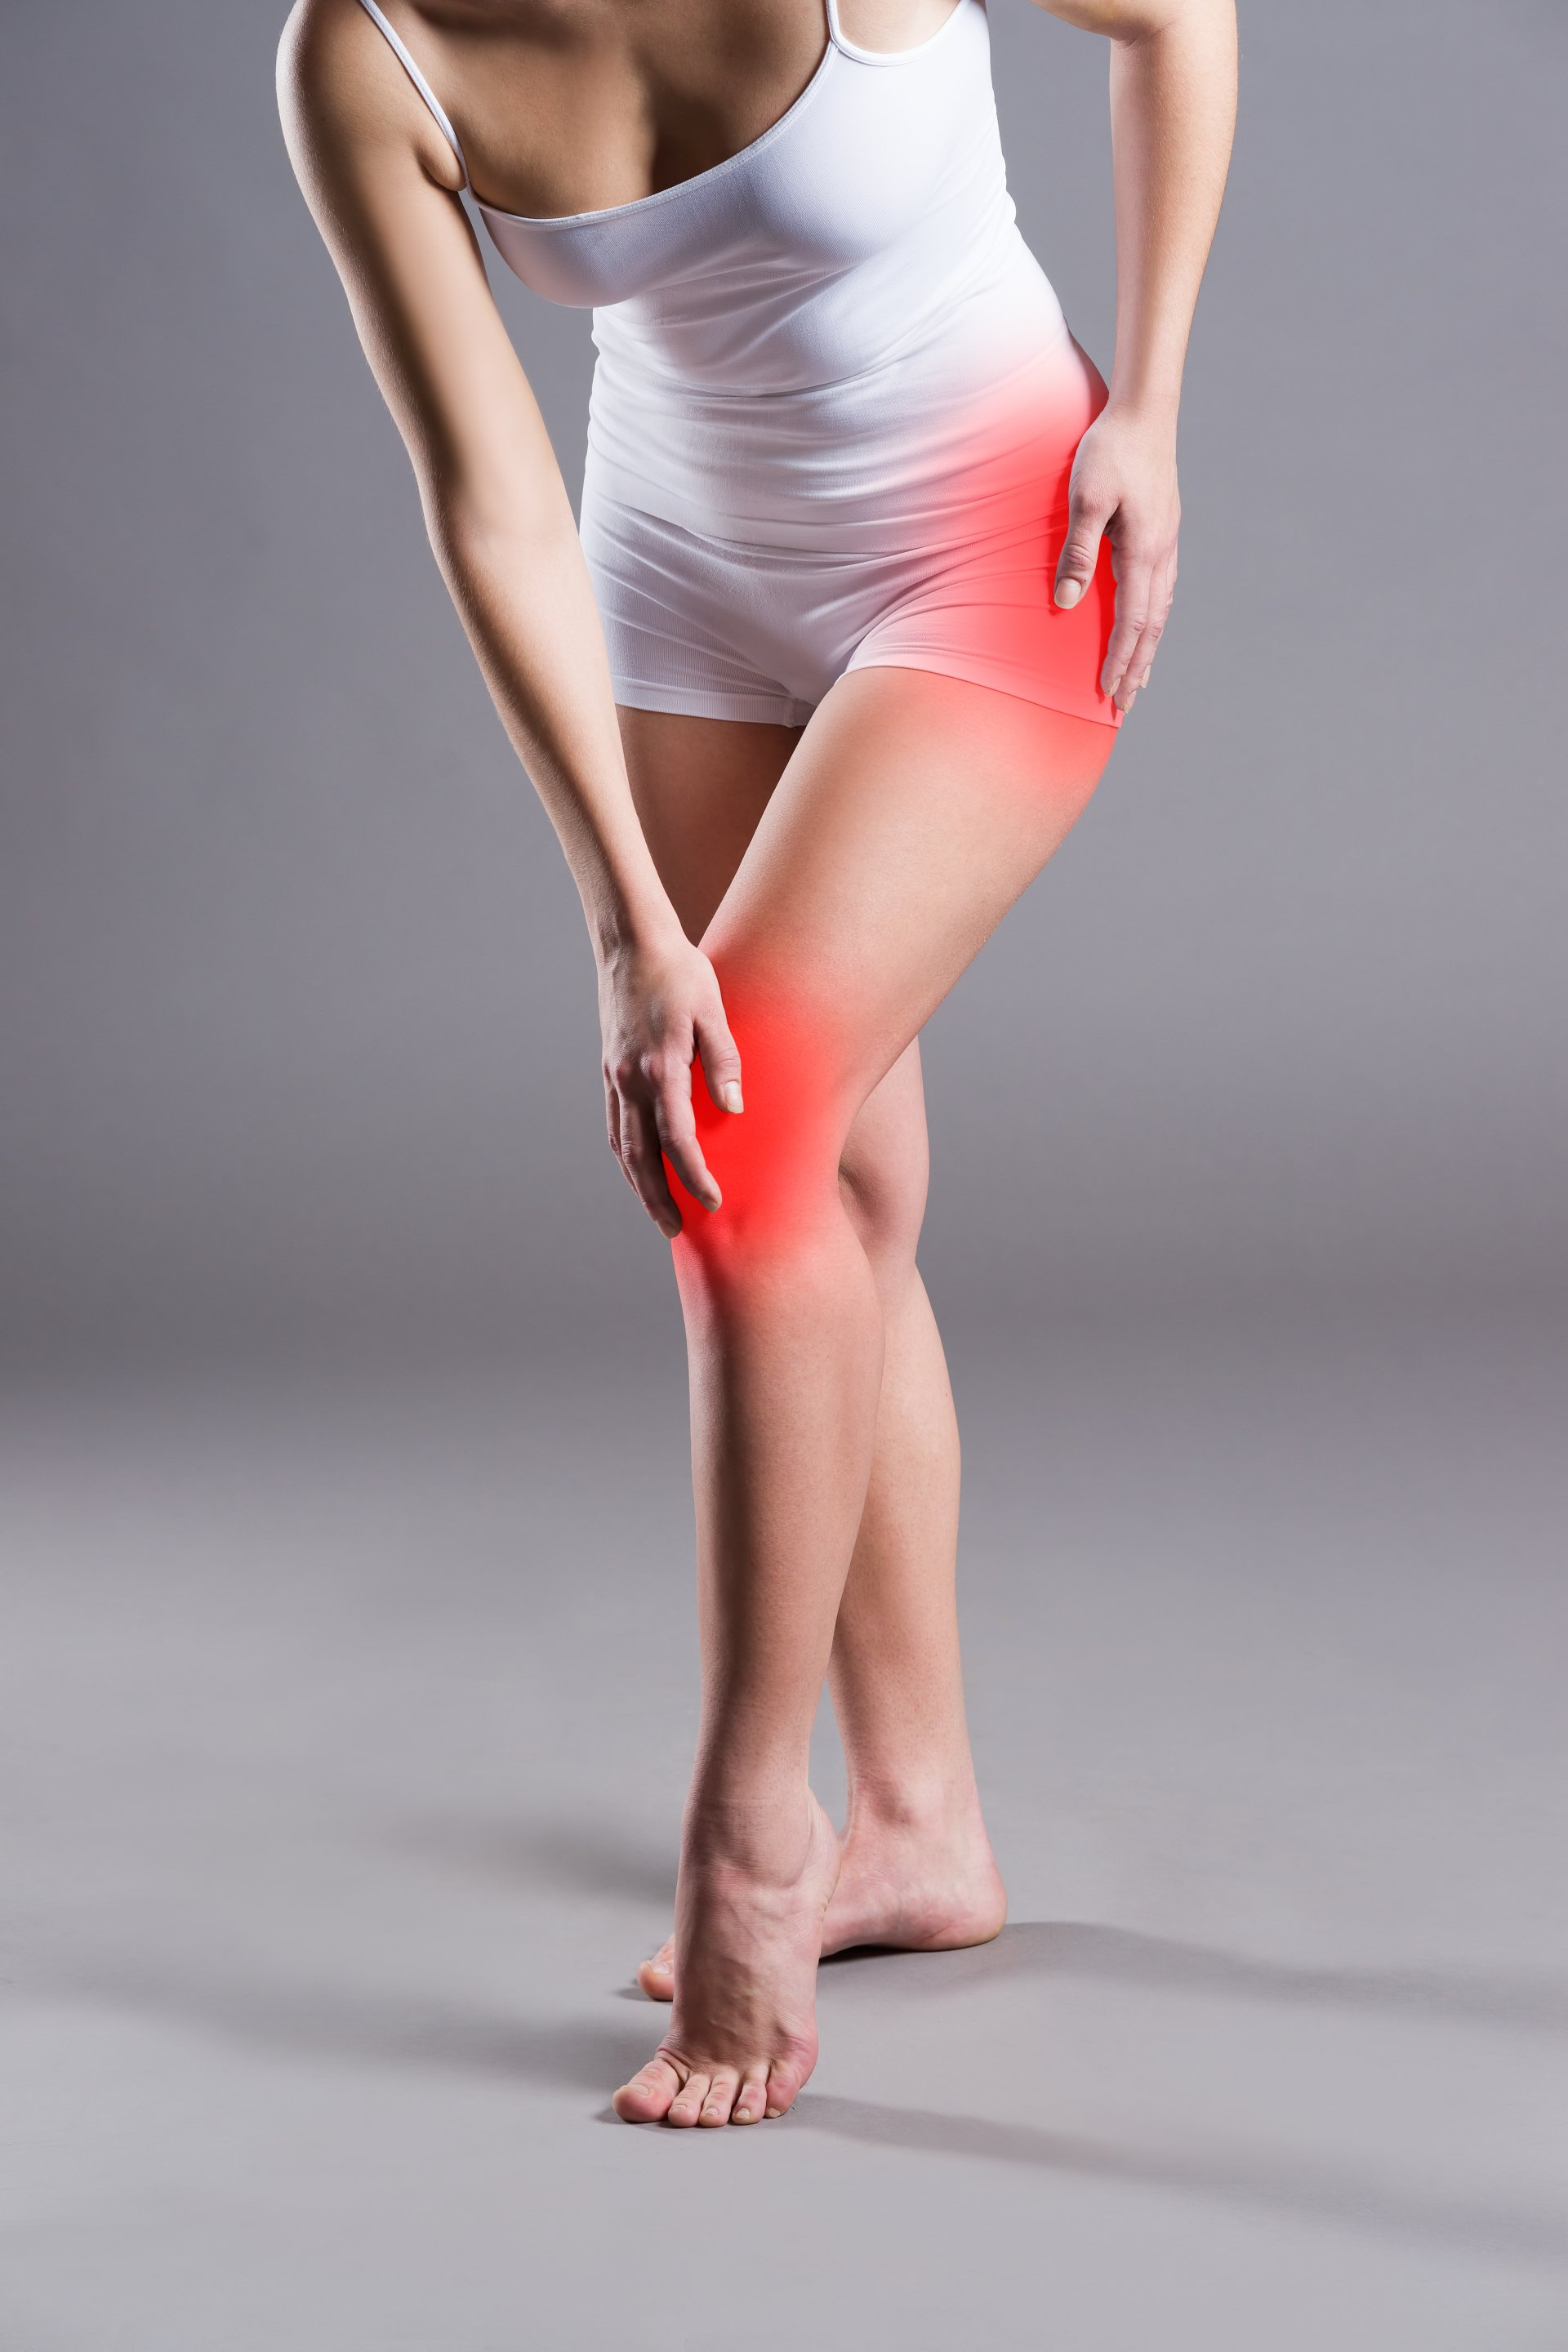 Osteoarthritis of Knee